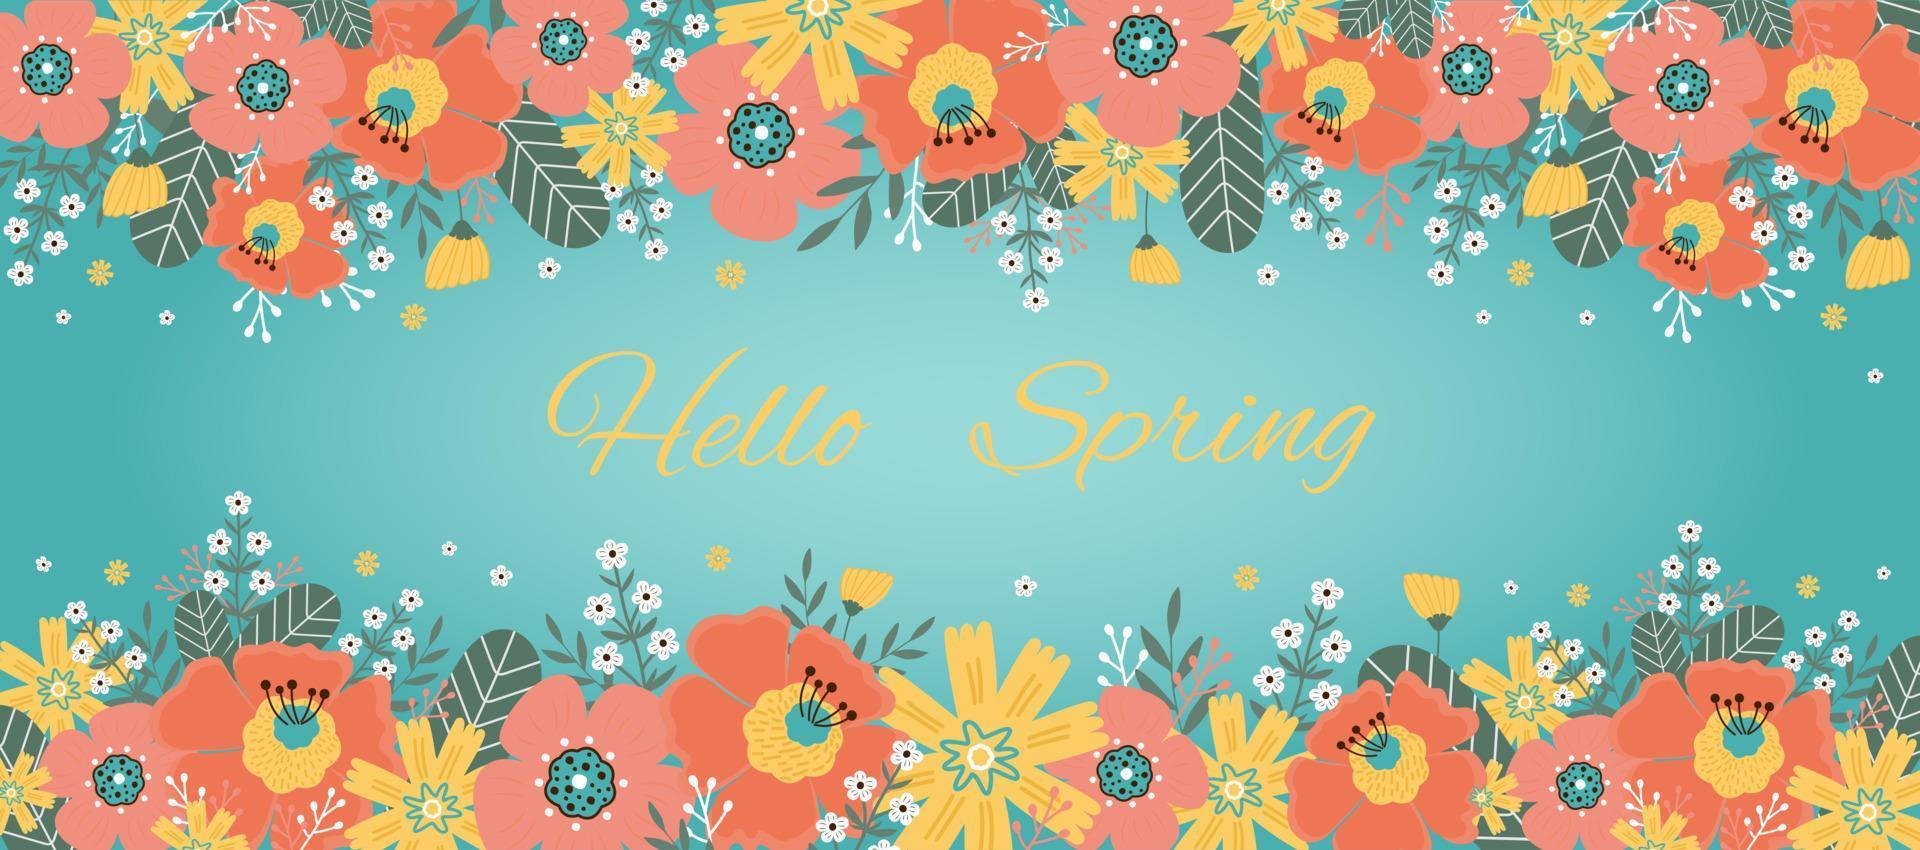 Hallo de lente. groet kaart met voorjaar bloemen, bladeren. vector